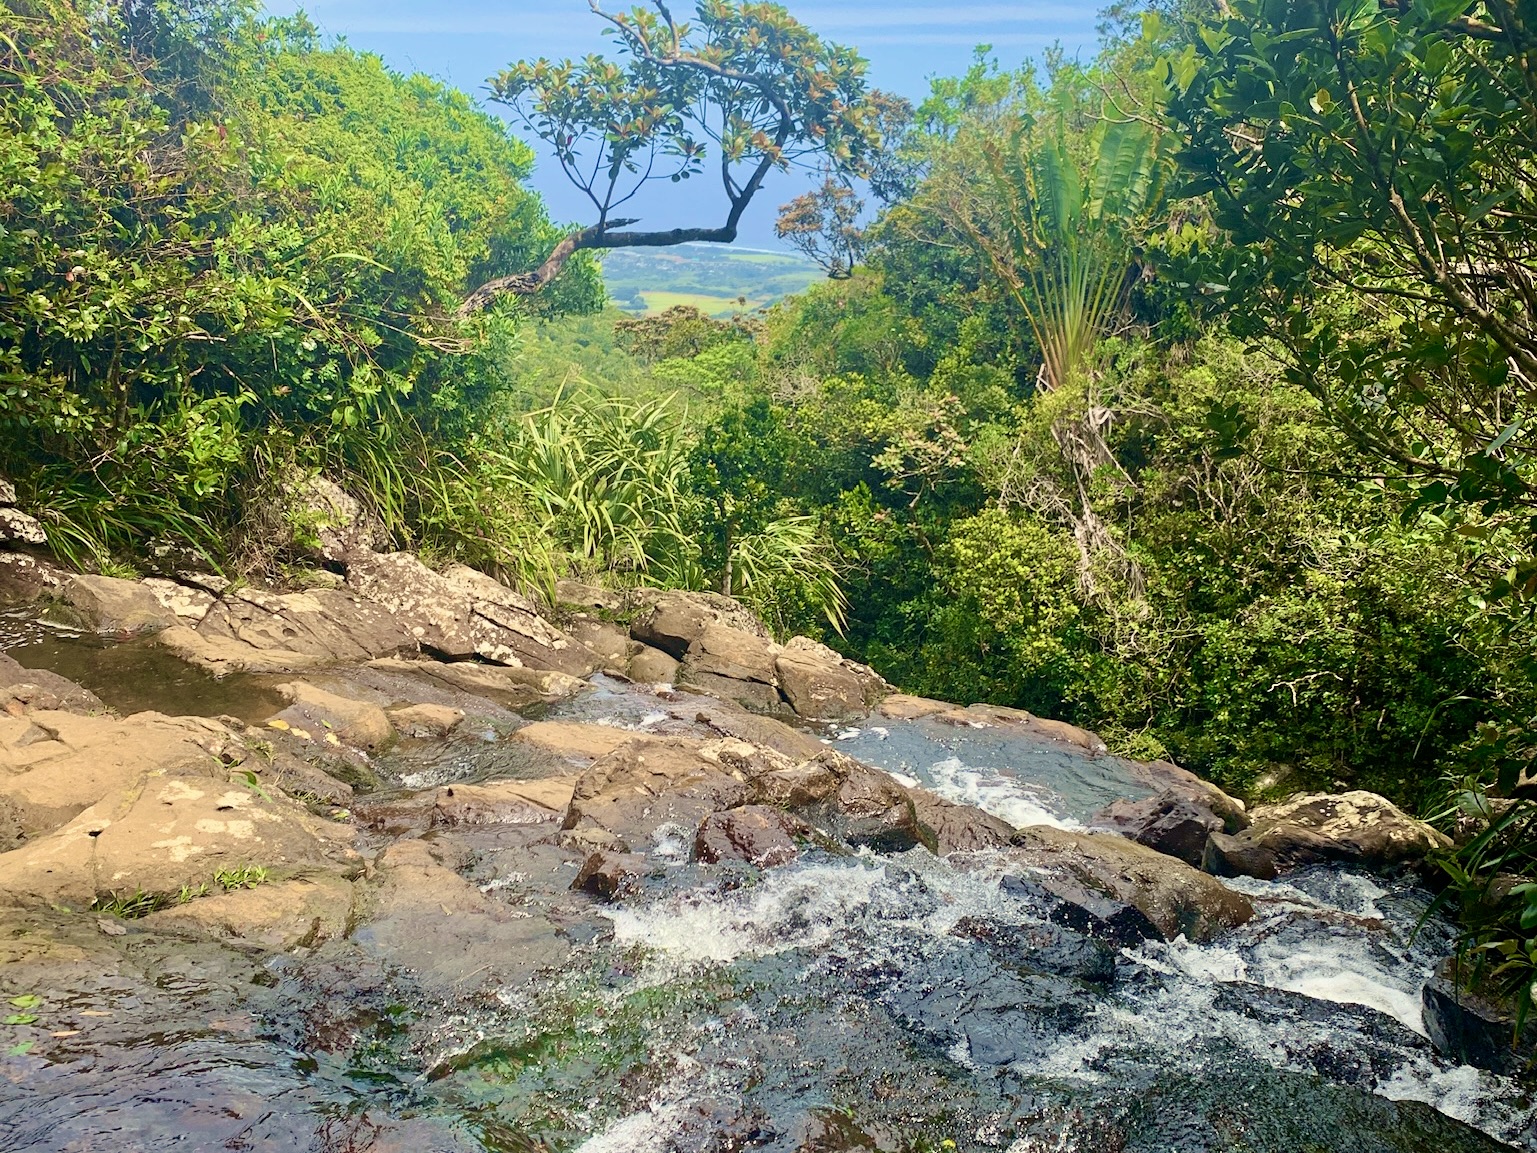 Im Black River Gorges National Park gibt es viel zu sehen und zu erleben. Wenn du wirklich viel sehen und entdecken möchtest, solltest du während deiner Mauritius Reise mehrere Tage für den Park einplanen. Nachfolgend nur einige Black River Gorges National Park Highlights und Aktivitäten, die du nicht verpassen solltest: